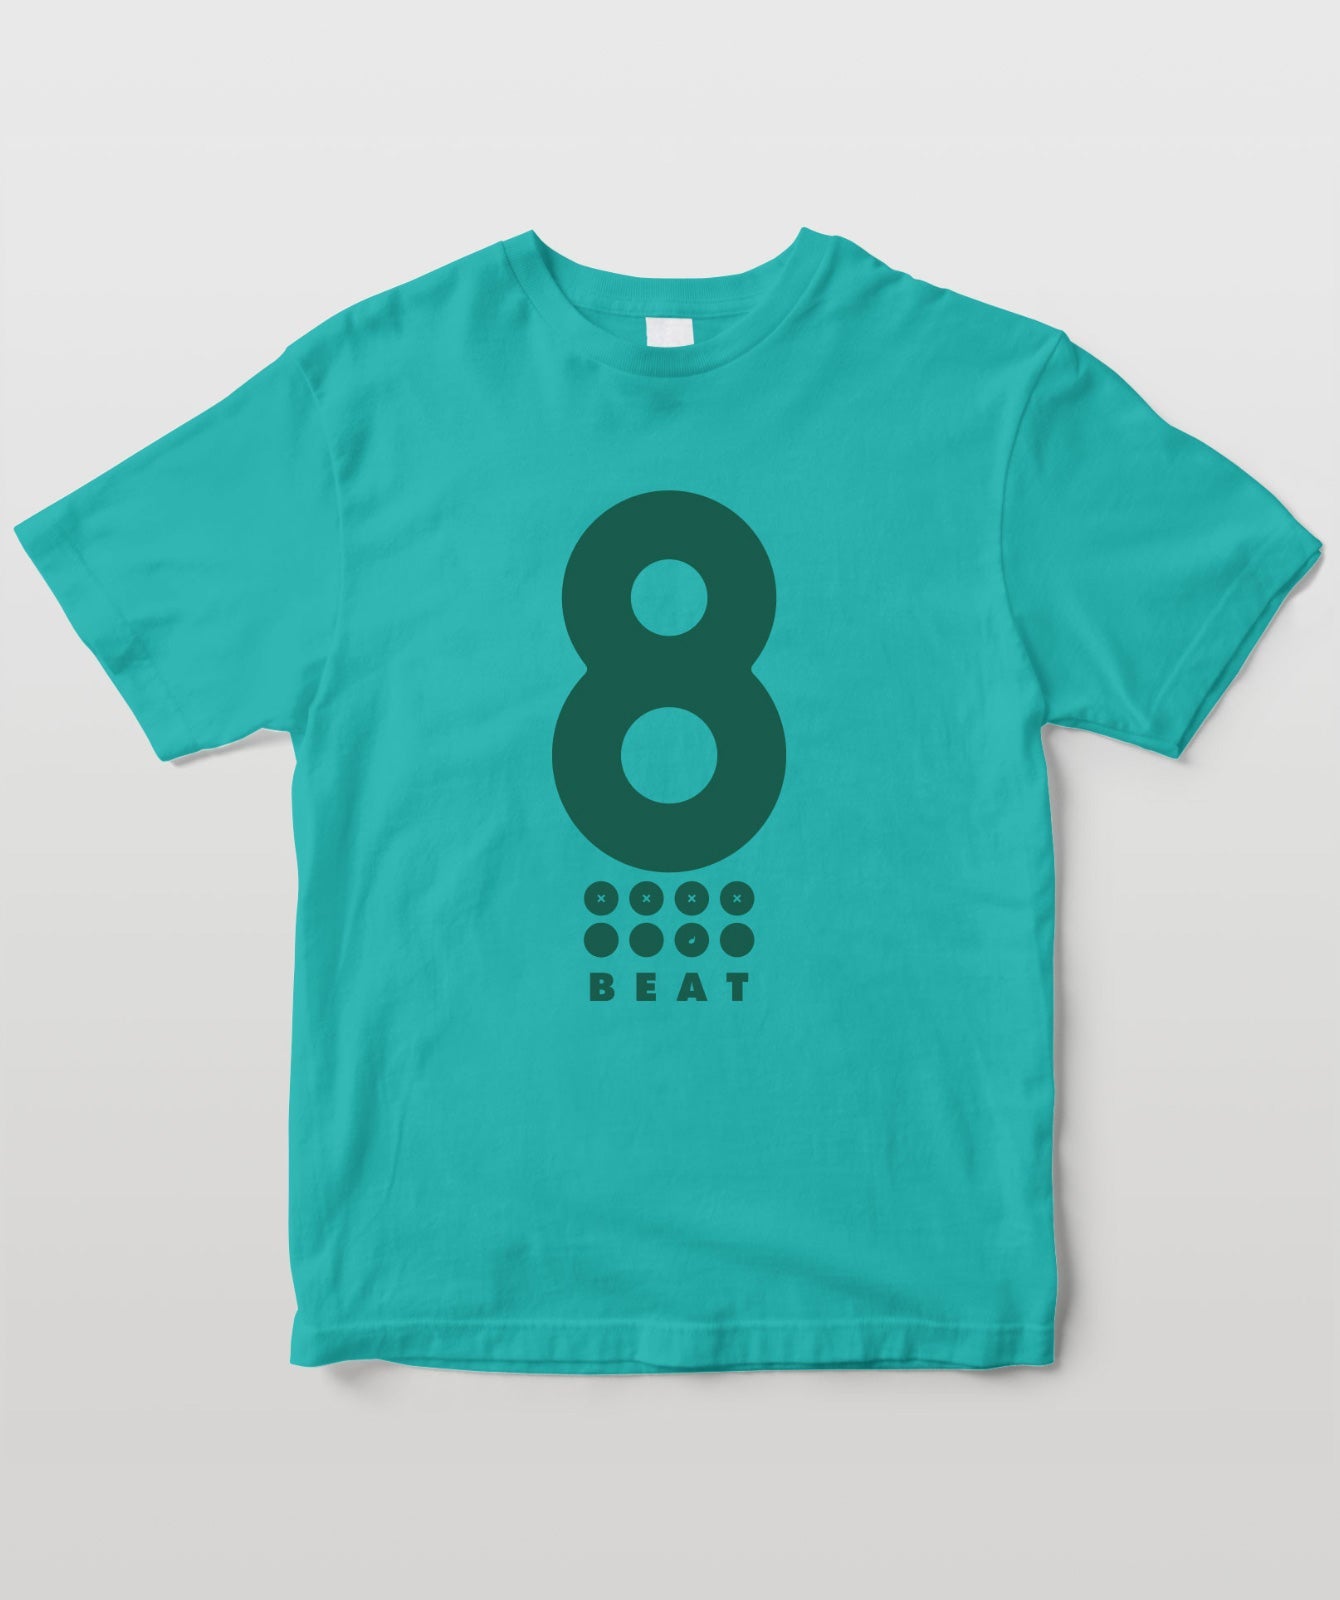 リズム・パターン Tシャツ “8 Beat”